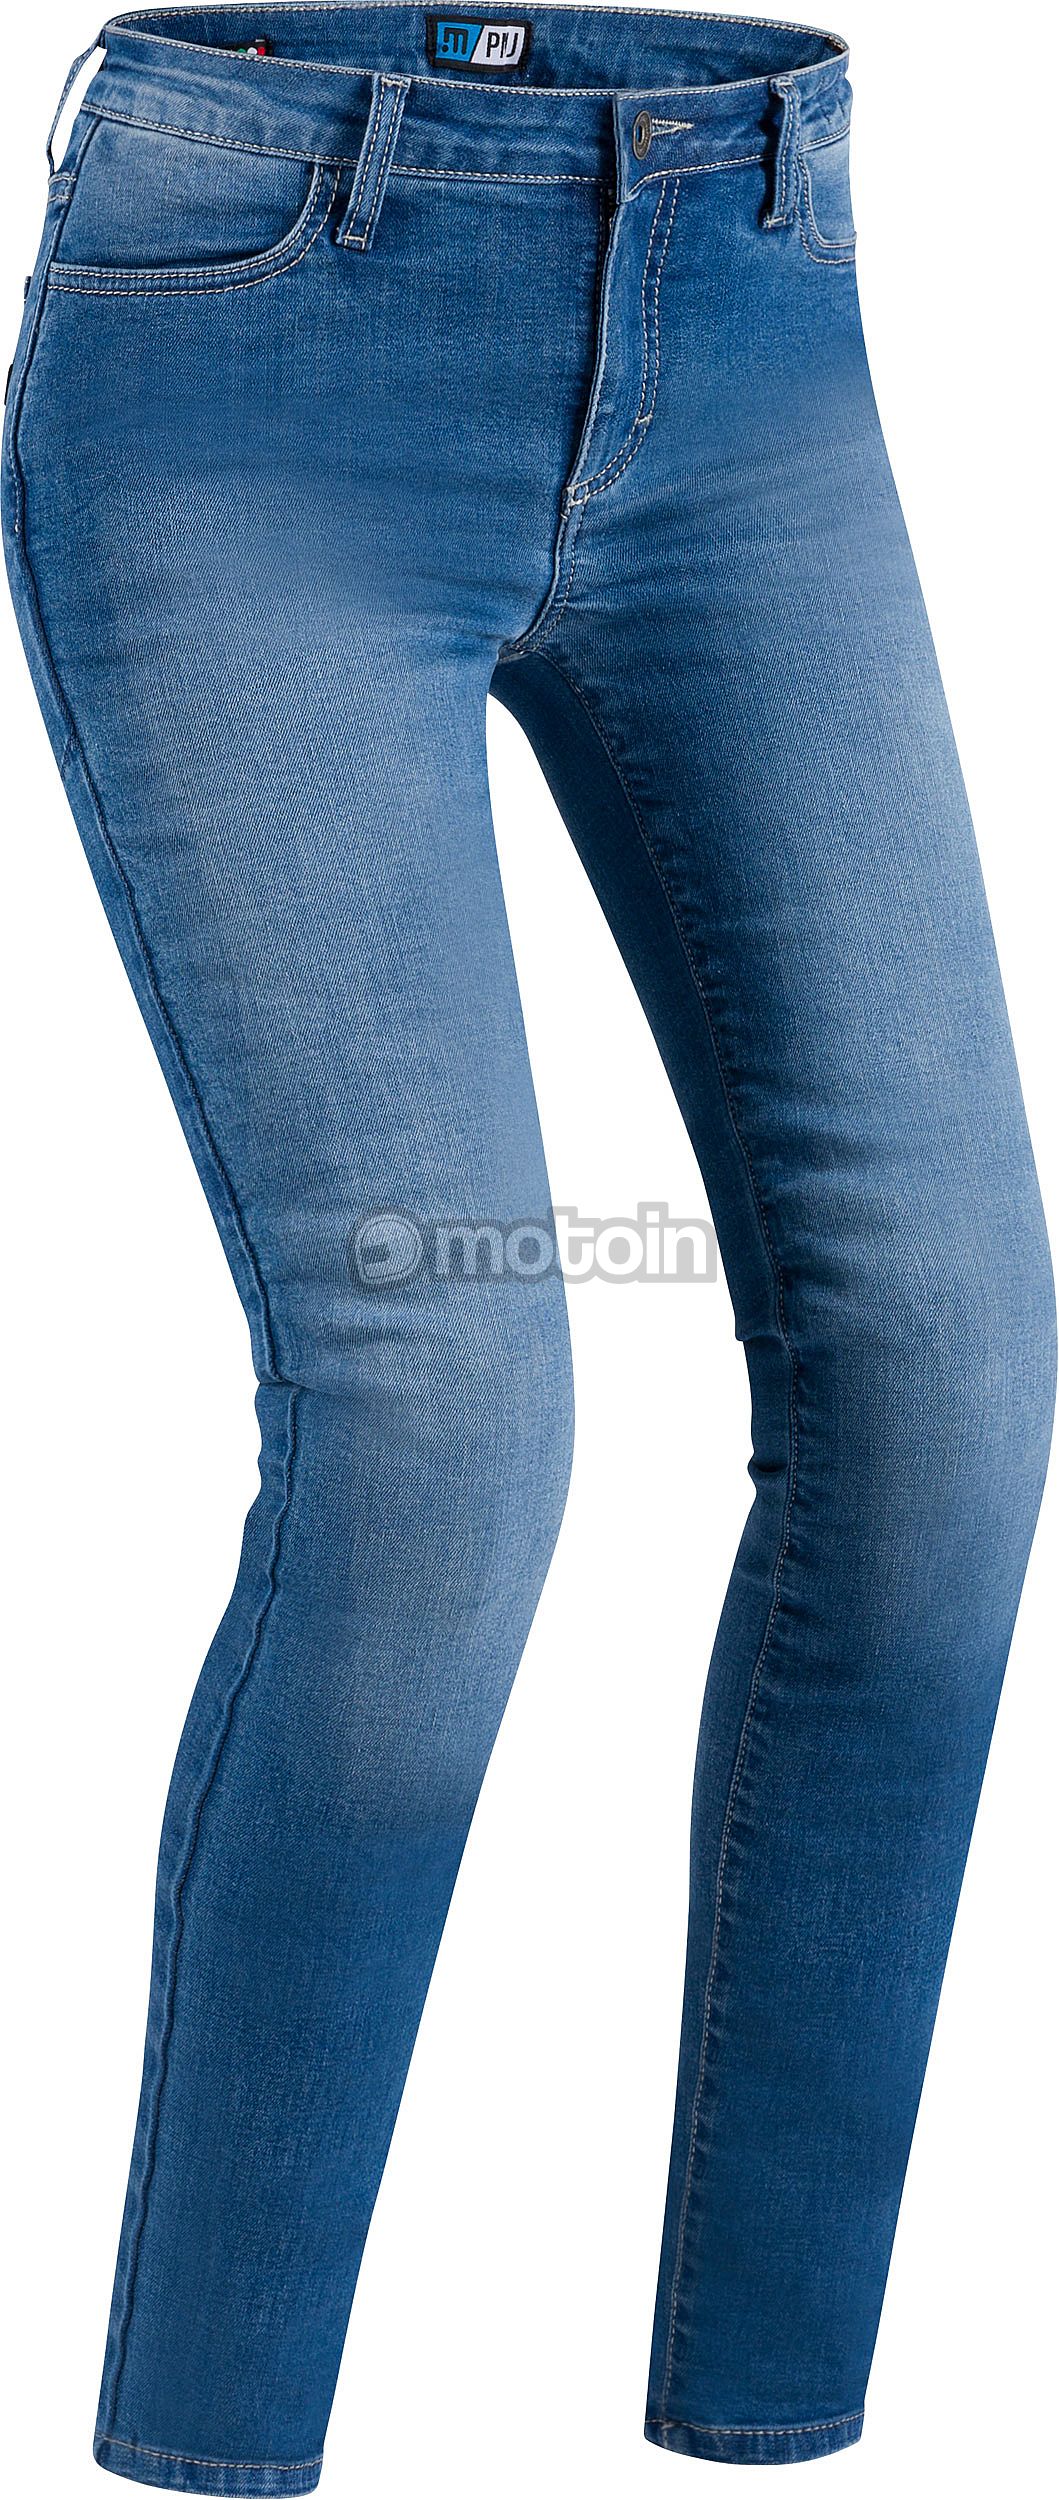 PMJ Skinny, jeans women